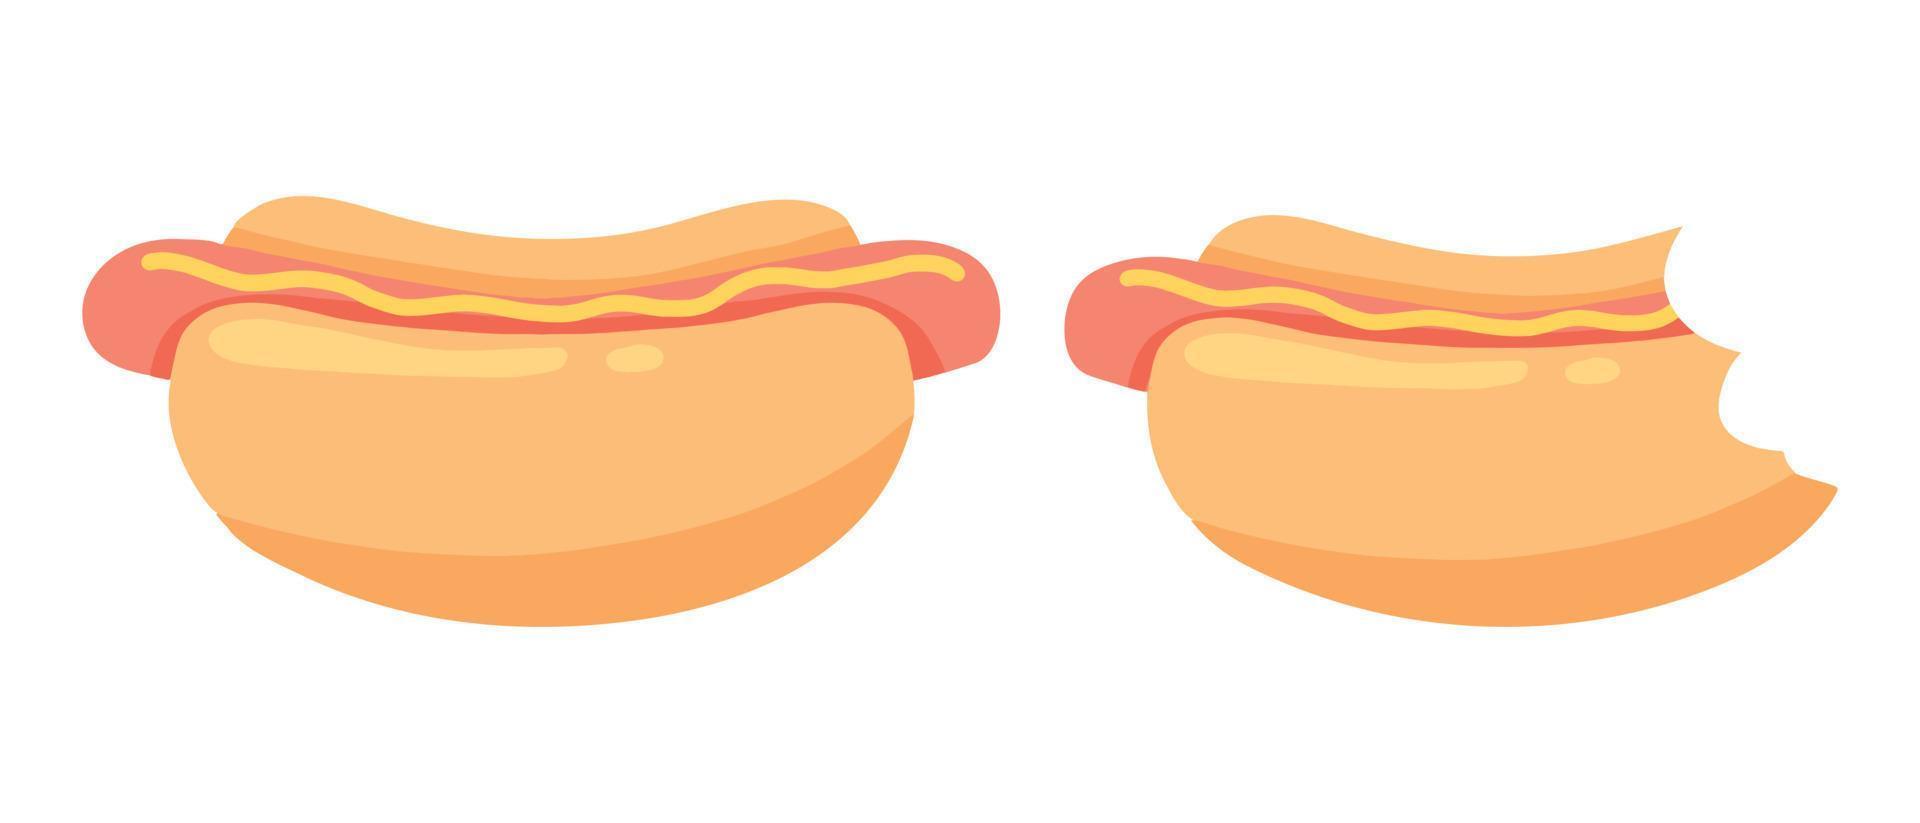 Hotdog . Brötchen mit Wurst und Senf. Fastfood. Vektorillustration im Cartoon-Stil. Straßenessen. ganzer und angebissener Hot Dog. vektor